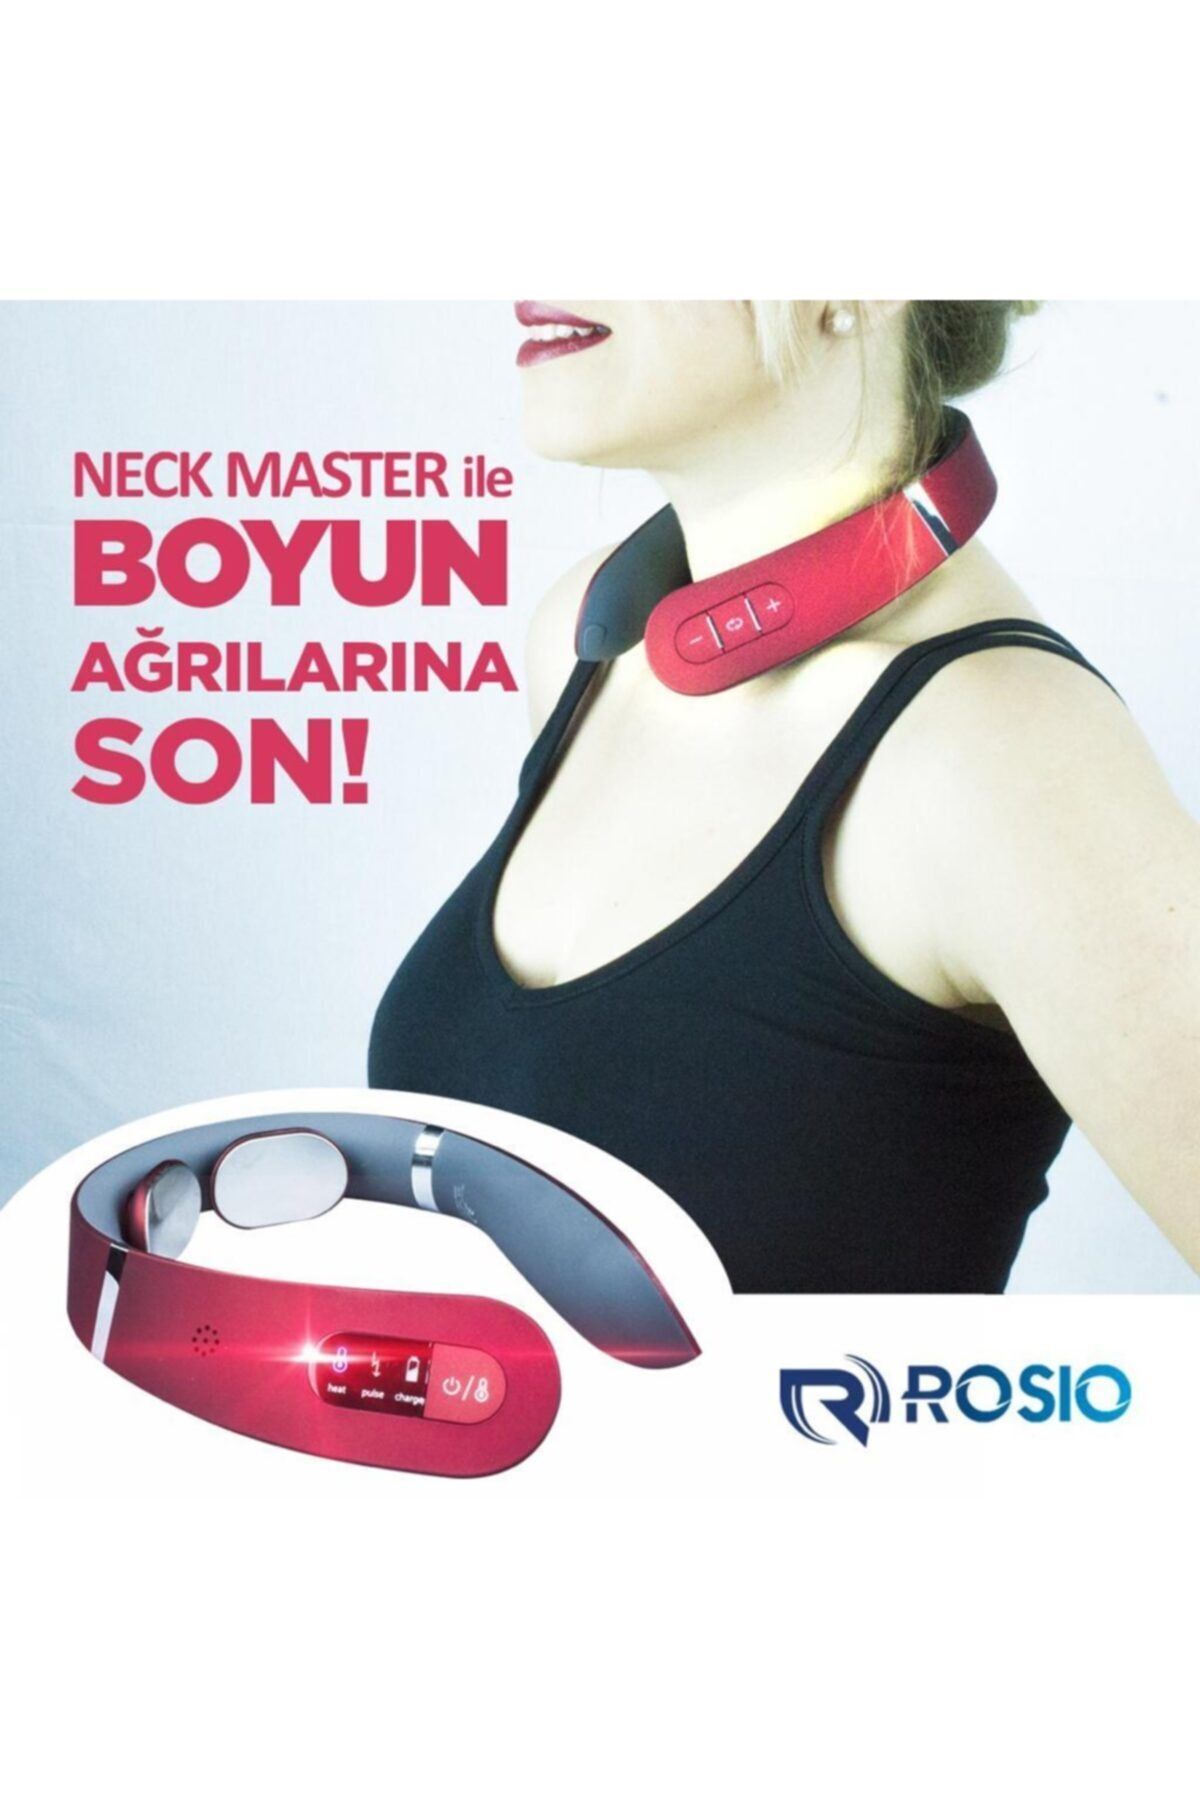 Rosio Neck Master Elektronik Boyun Masaj Aleti